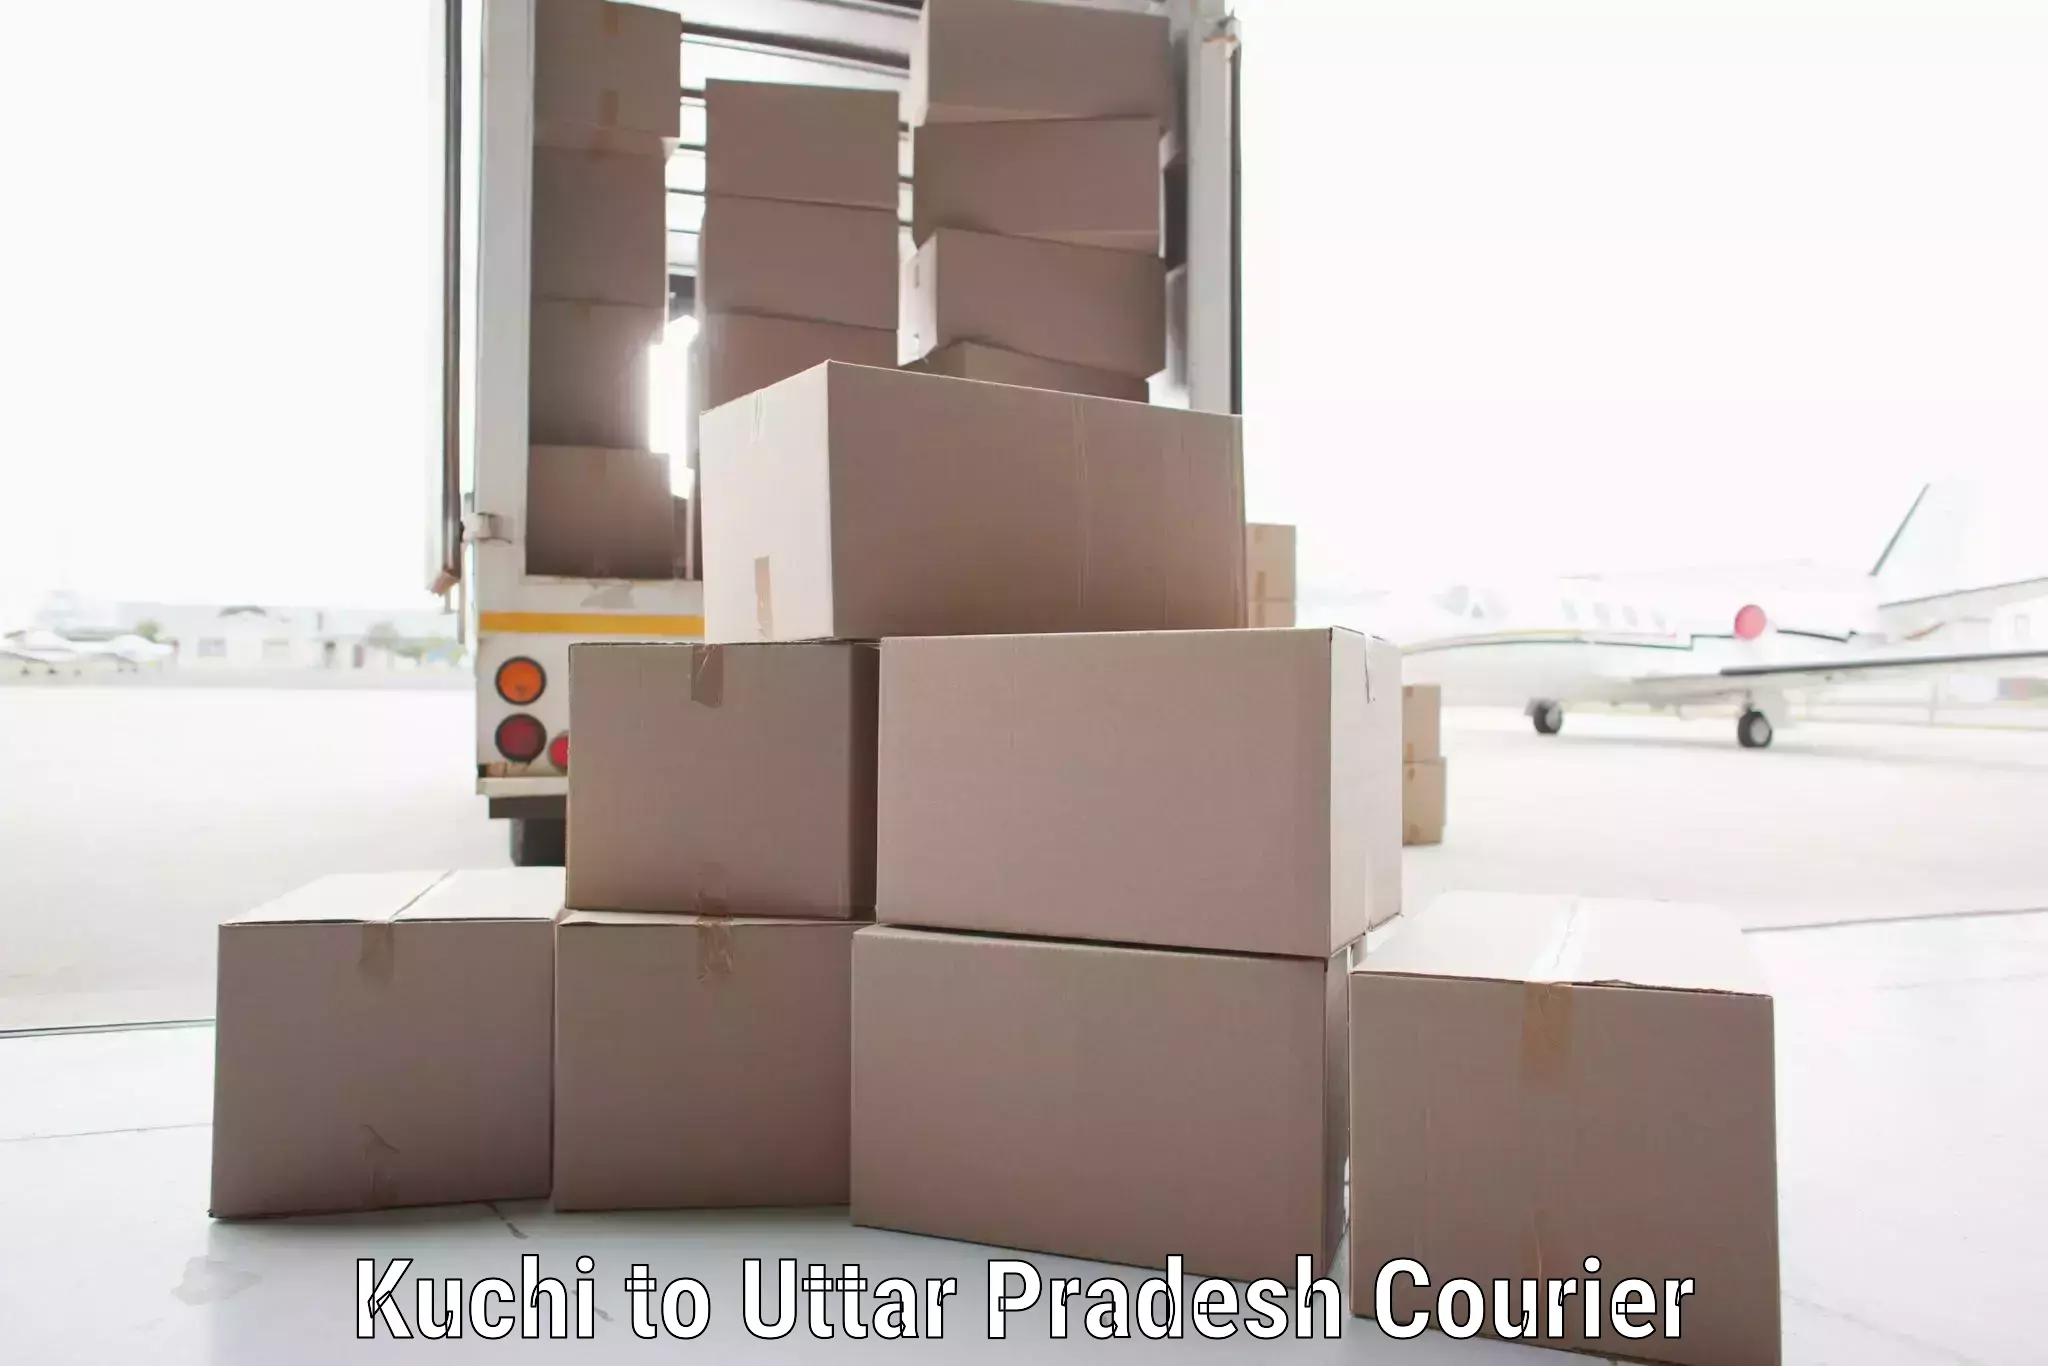 Fastest parcel delivery Kuchi to Uttar Pradesh